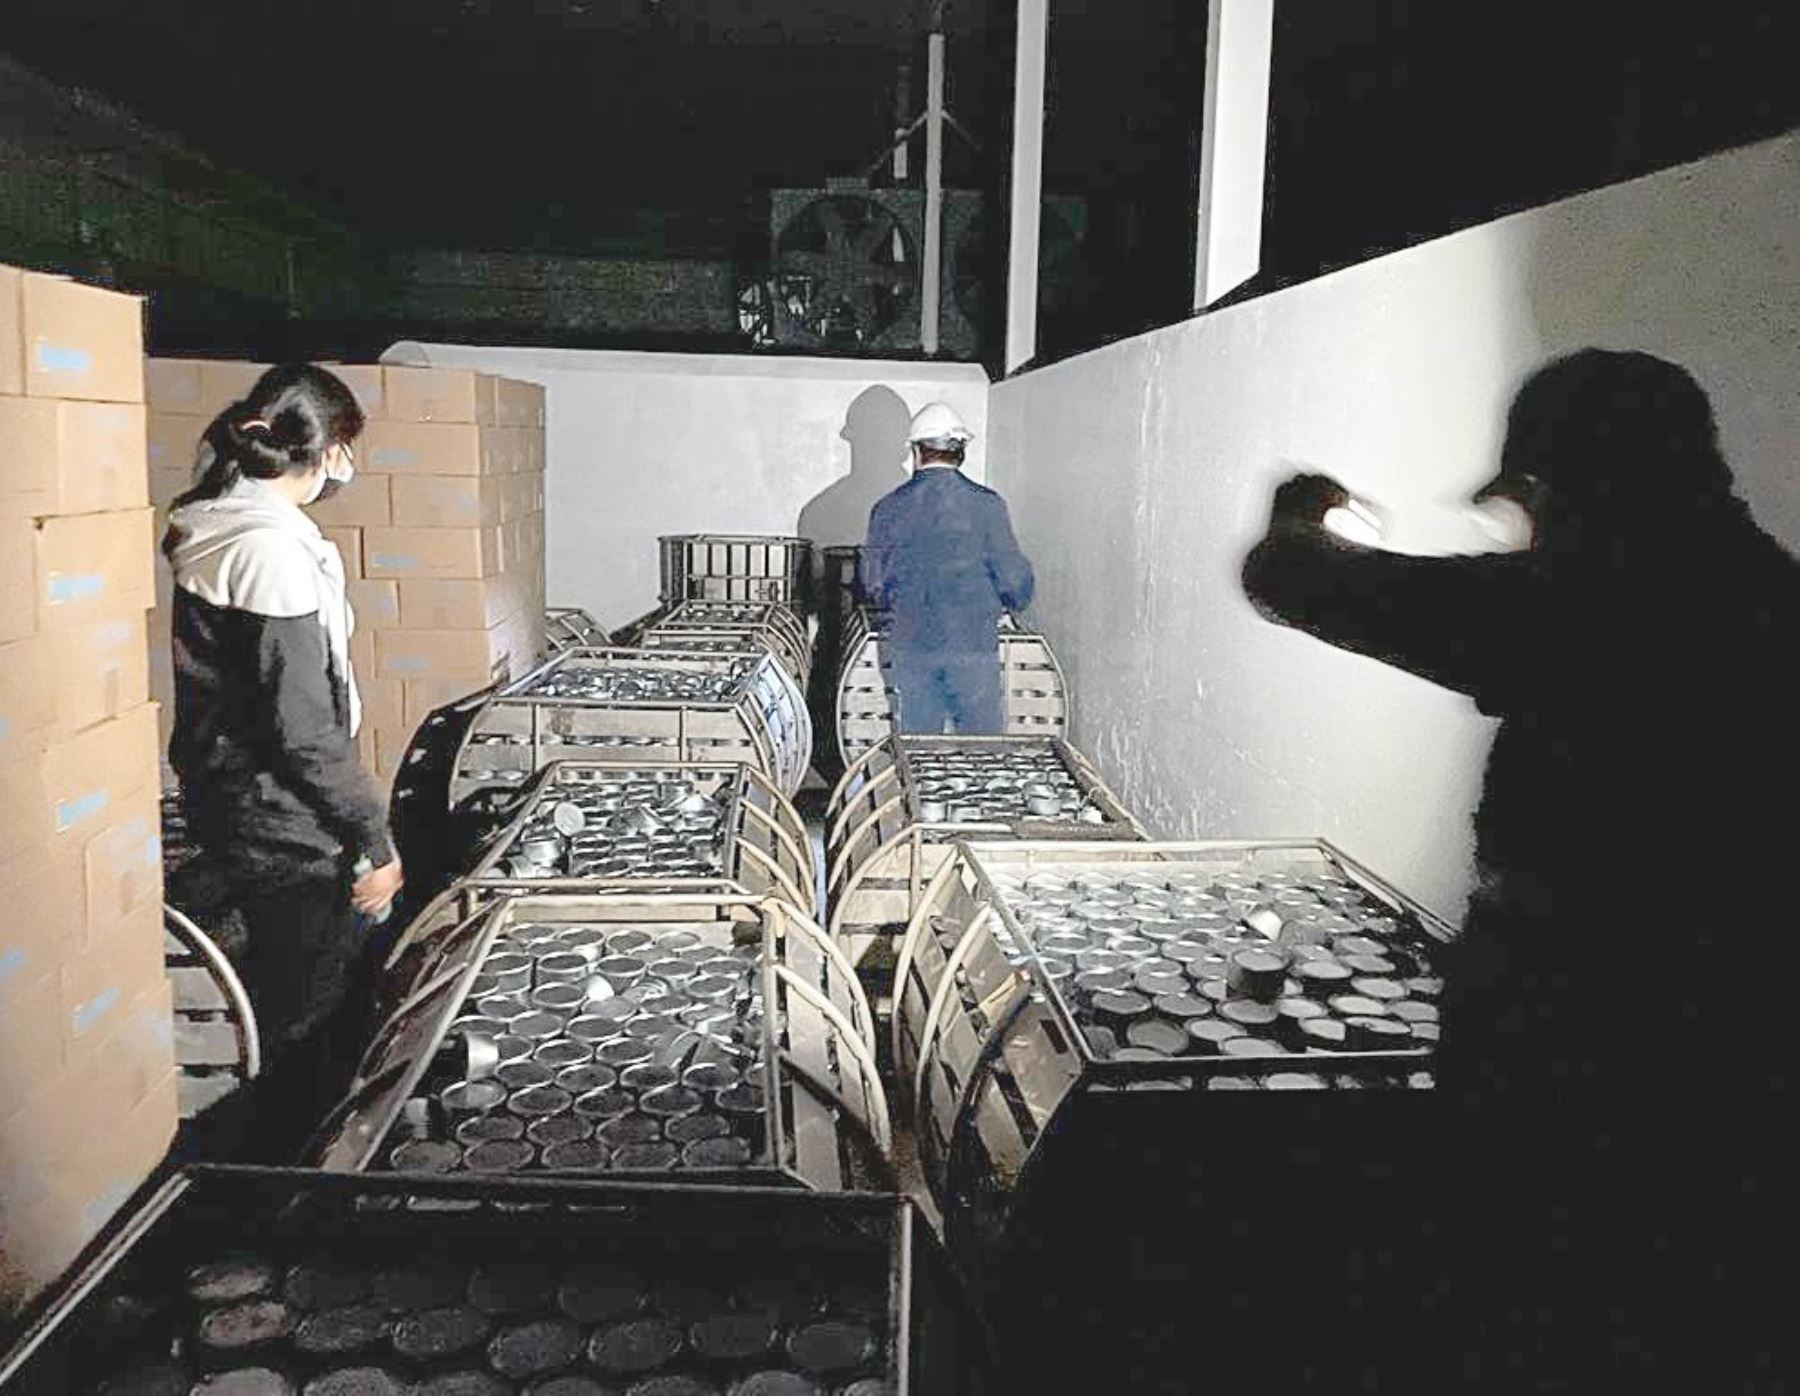 Sanipes incautó más de 5 toneladas de conservas de pescado procesadas sin autorización sanitaria y que eran elaboradas por una planta ubicada en Chimbote, en Áncash. Foto: ANDINA/difusión.